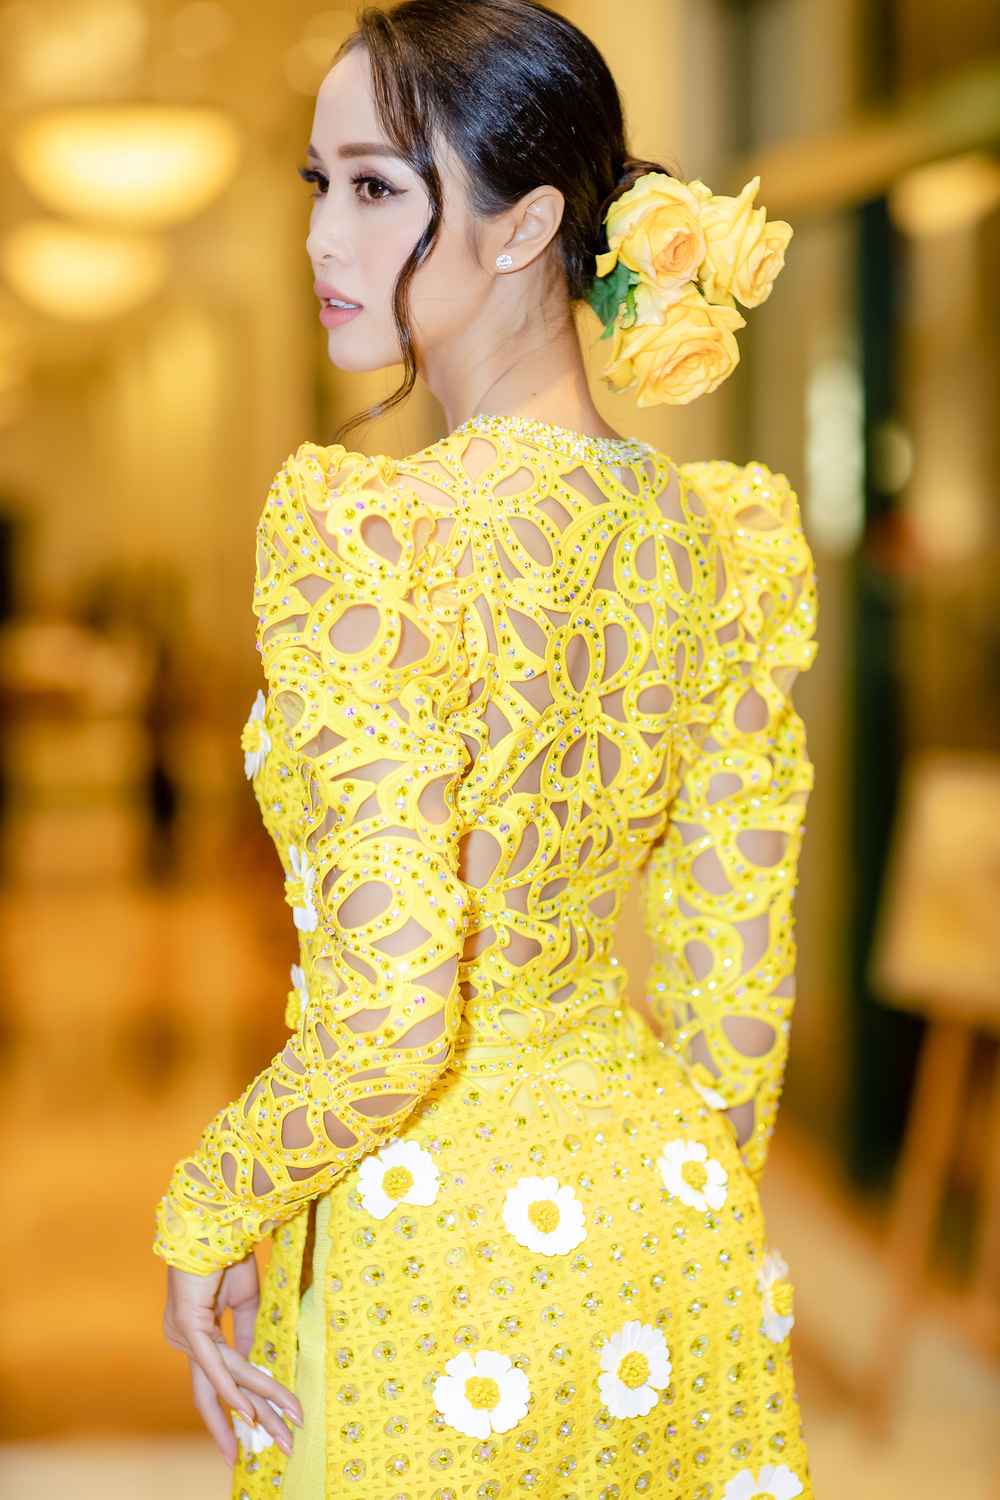 
Người đẹp còn khéo léo khi kết hợp phụ kiện trên tóc để tạo điểm khác biệt, mang dáng vóc của 1 người phụ nữ Việt Nam hiện đại.